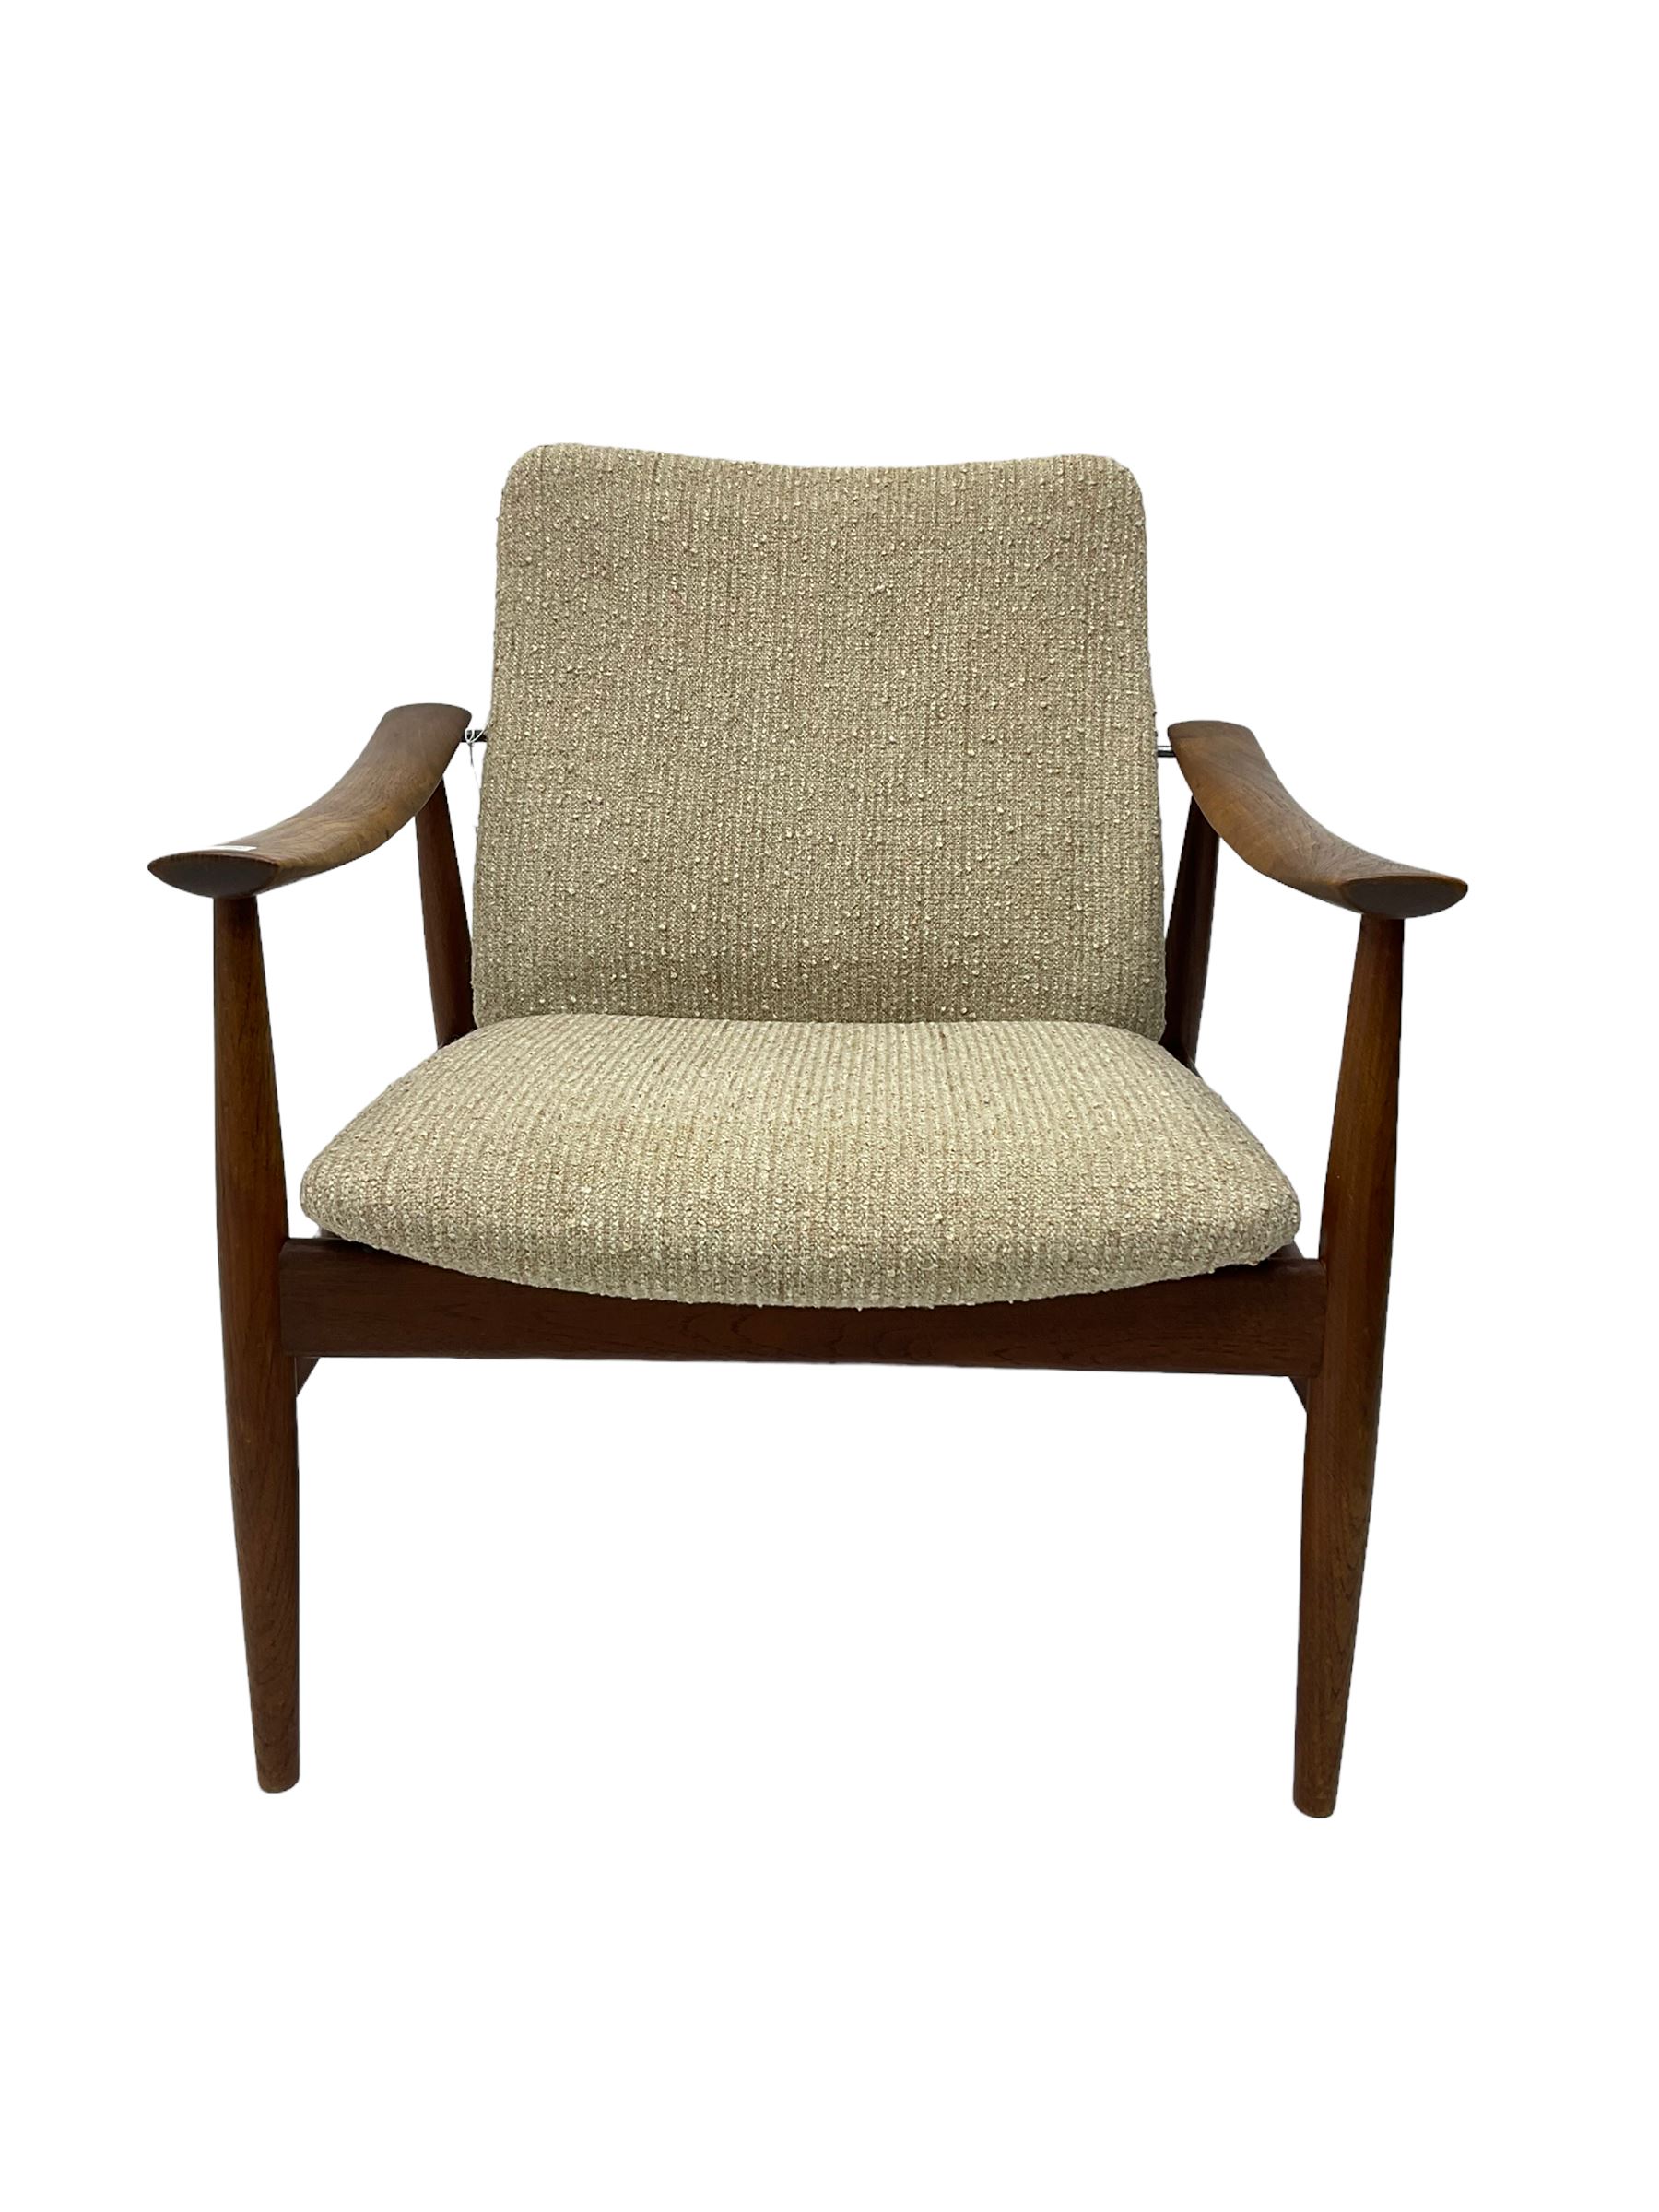 Finn Juhl for France & Son - 'model 138' mid-20th century teak easy chair upholstered in beige fabri